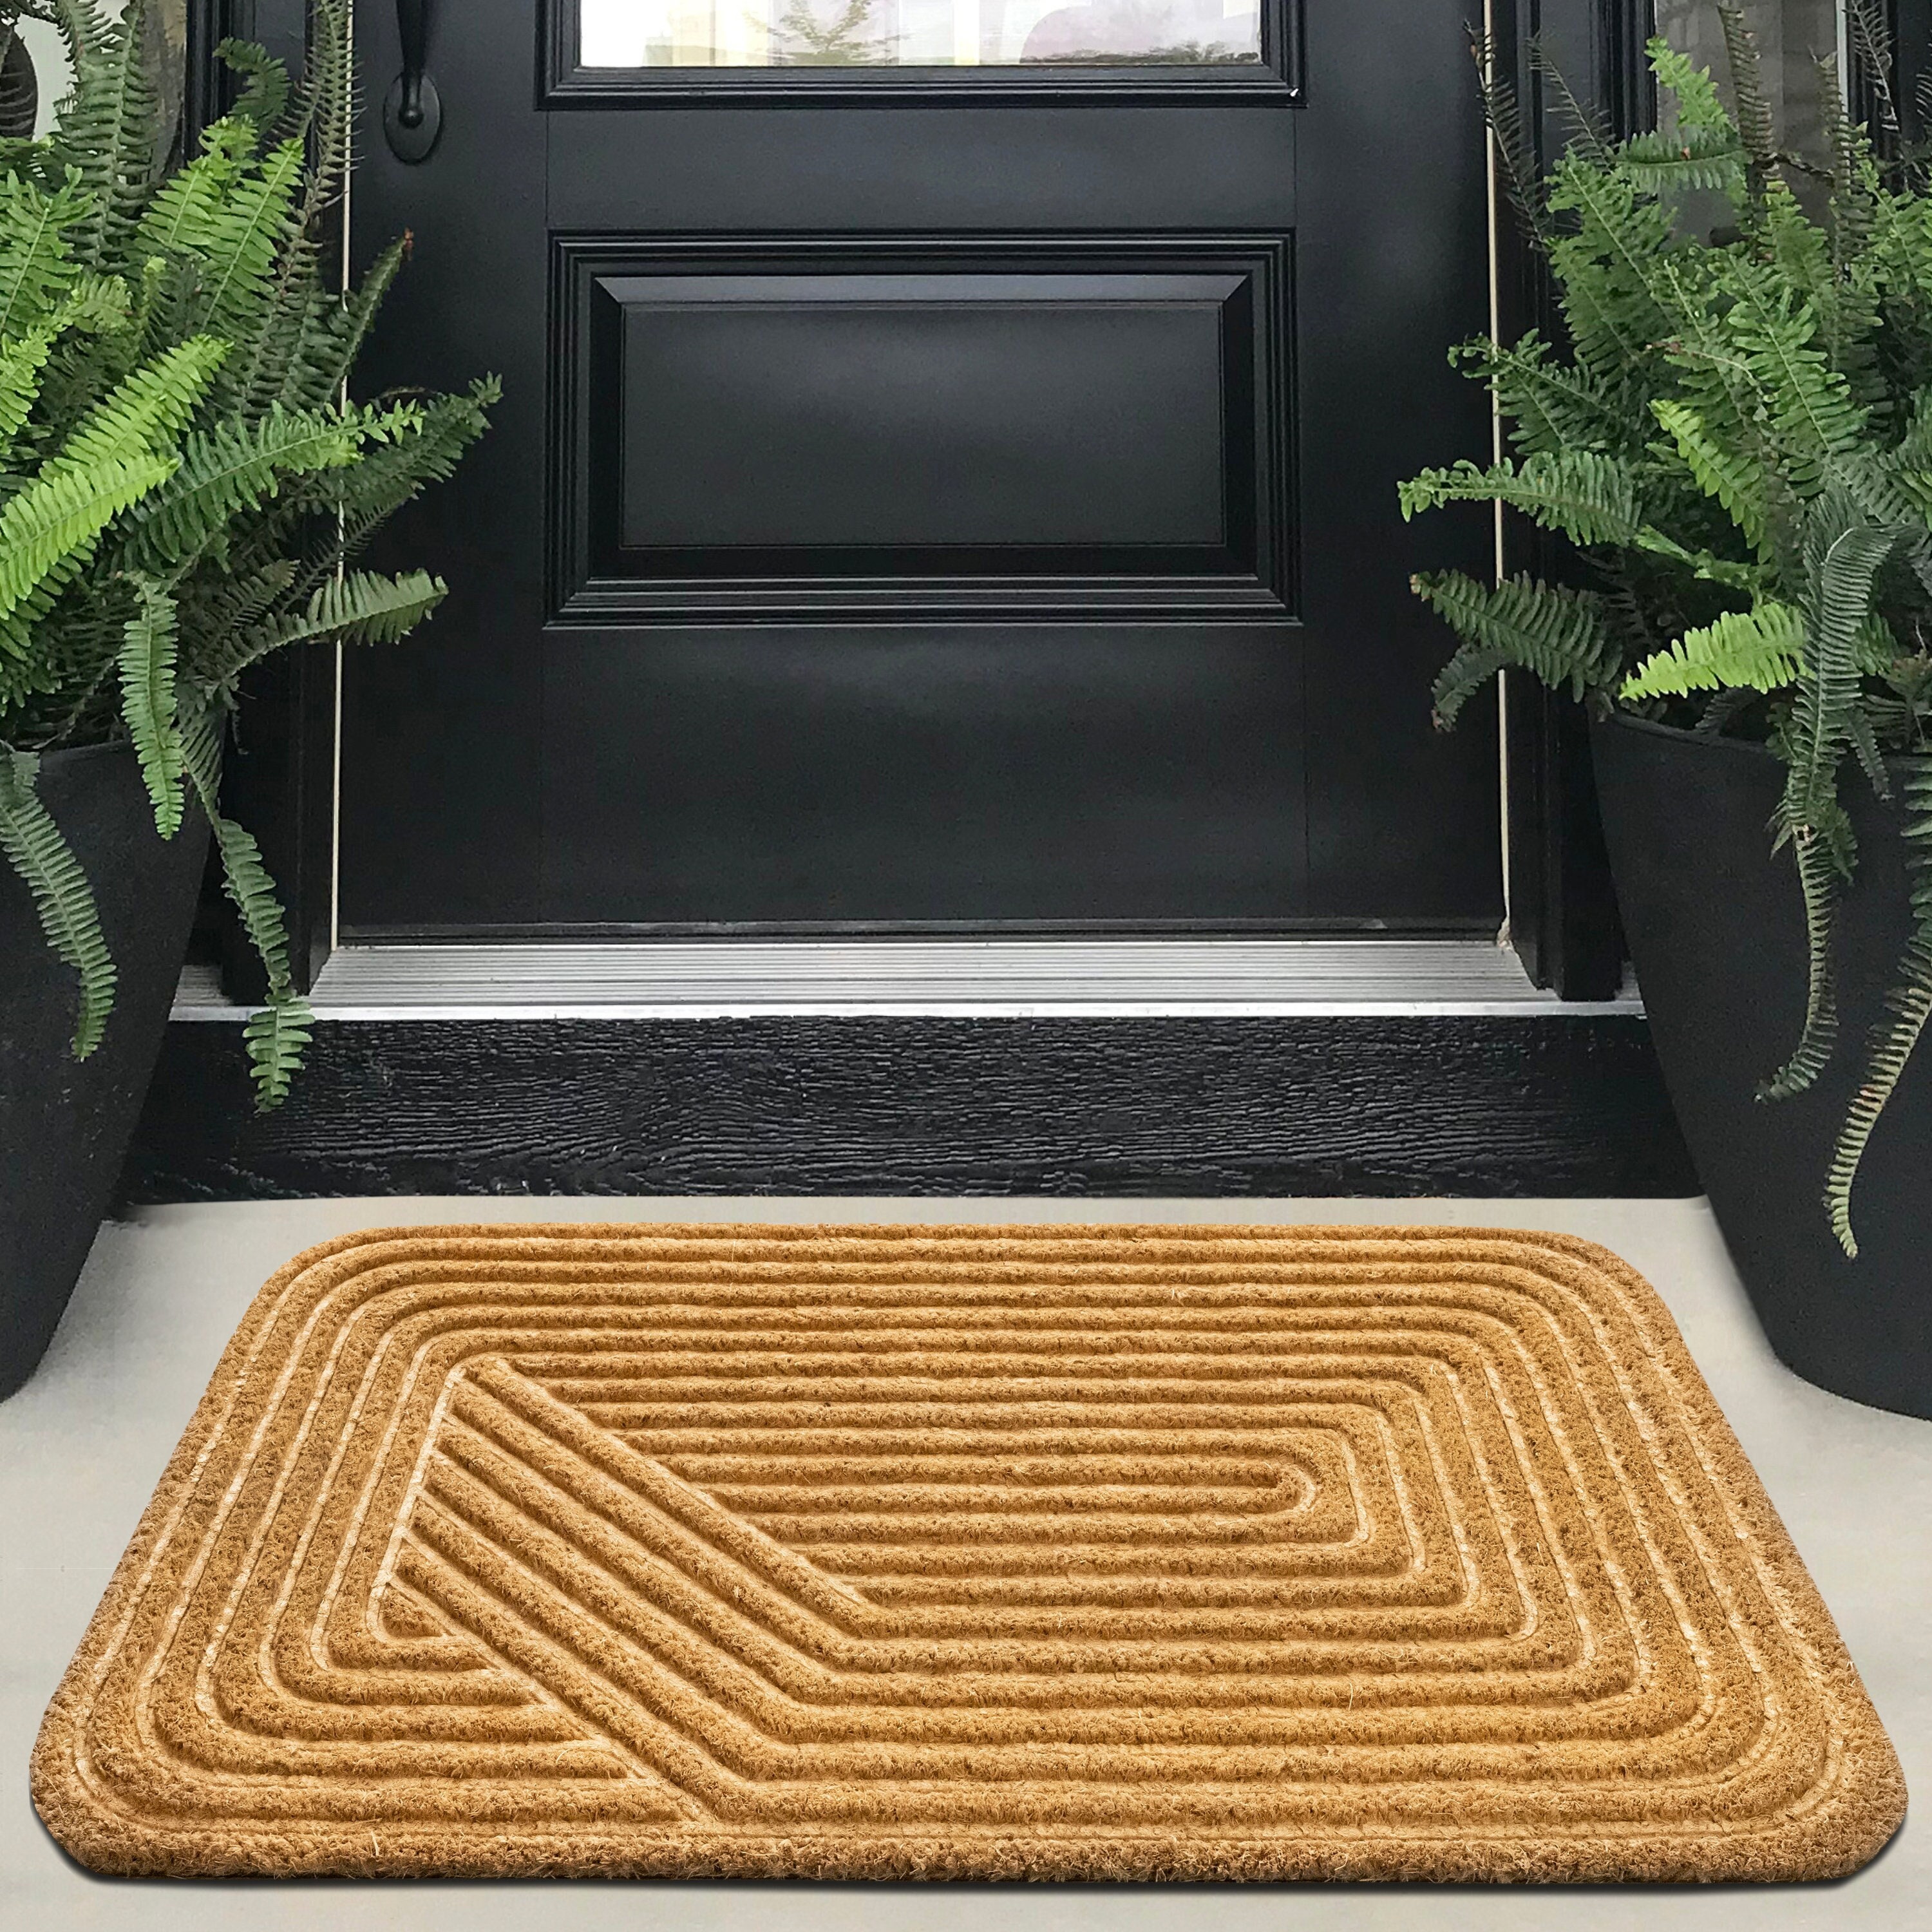 Monogrammed Outdoor Welcome Door Mat — nuLOOM